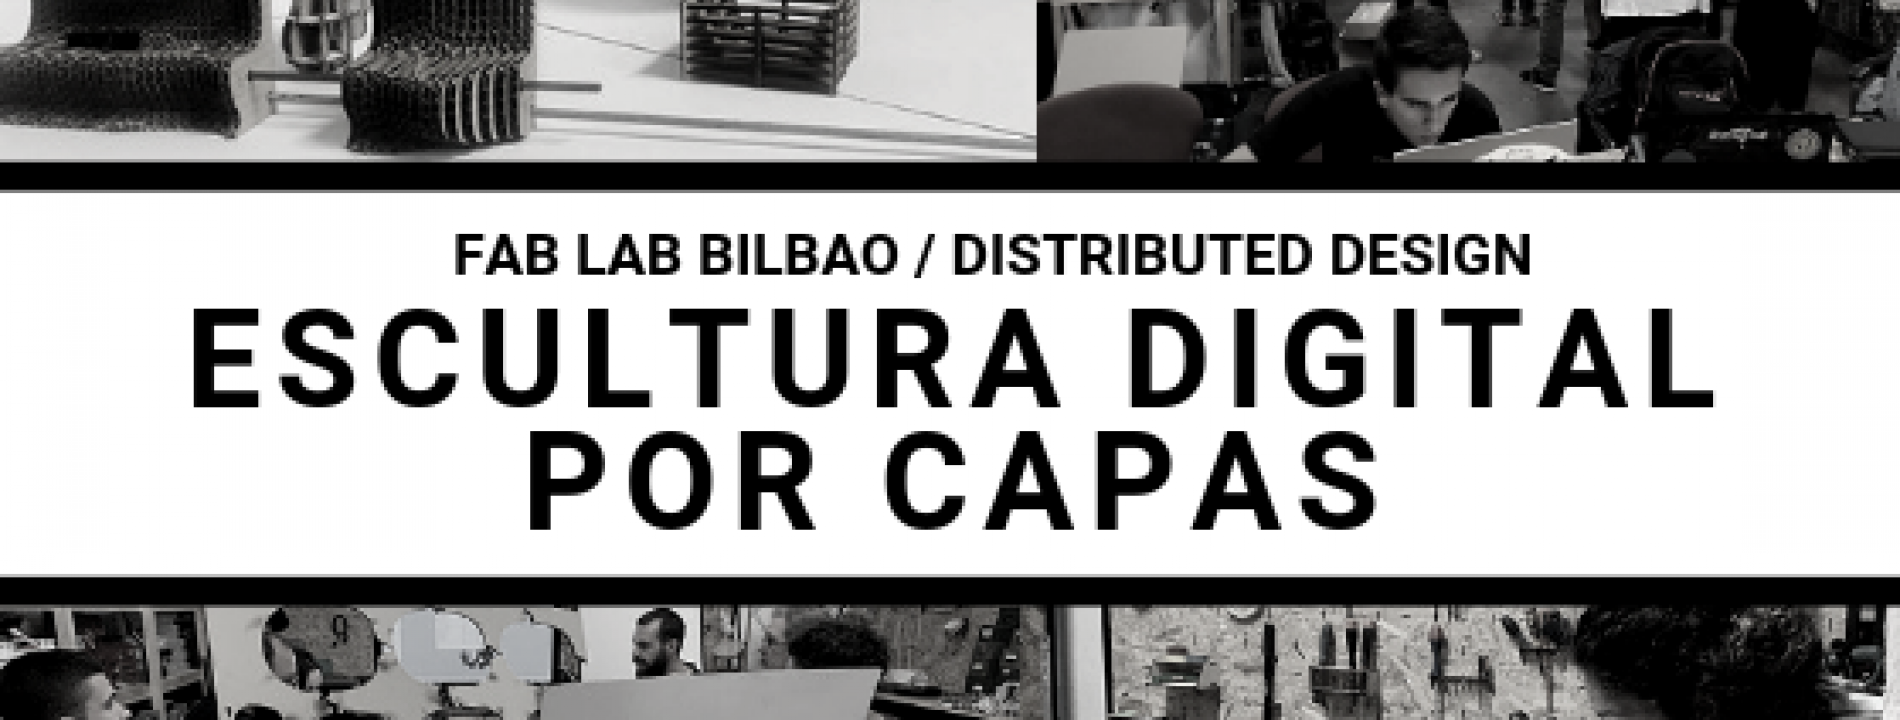 Varias imágenes de talleres anteriores en Fab Lab Bilbao